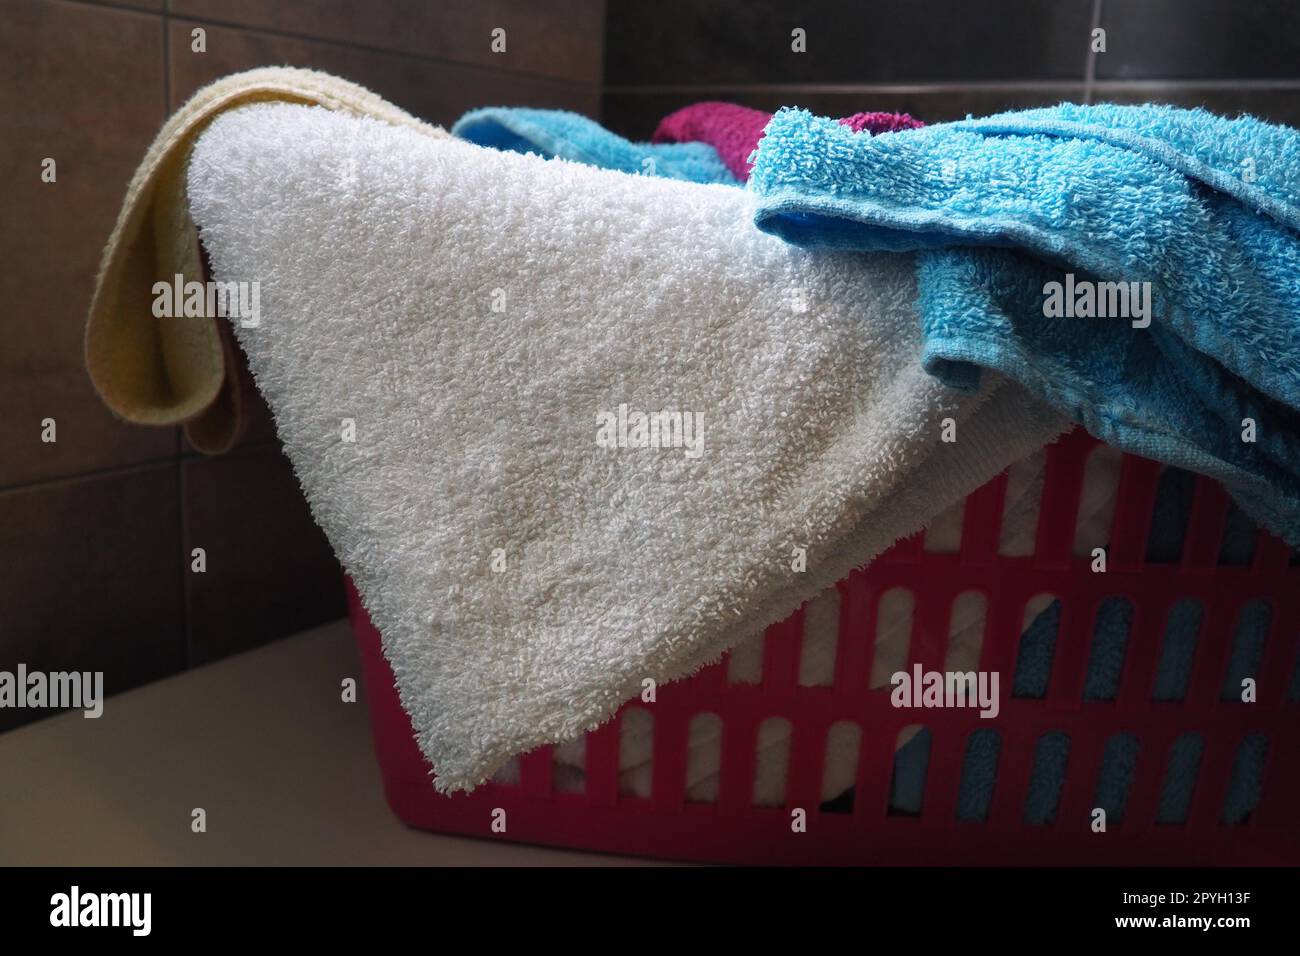 Handtücher im Wäschekorb. Blaue und pinkfarbene Frottee-Handtücher werden in einen pinkfarbenen Plastikkorb geworfen. Housekeeping. Wäsche vor dem Waschen aufbewahren und trennen. Licht von oben von offenem Fenster. Stockfoto